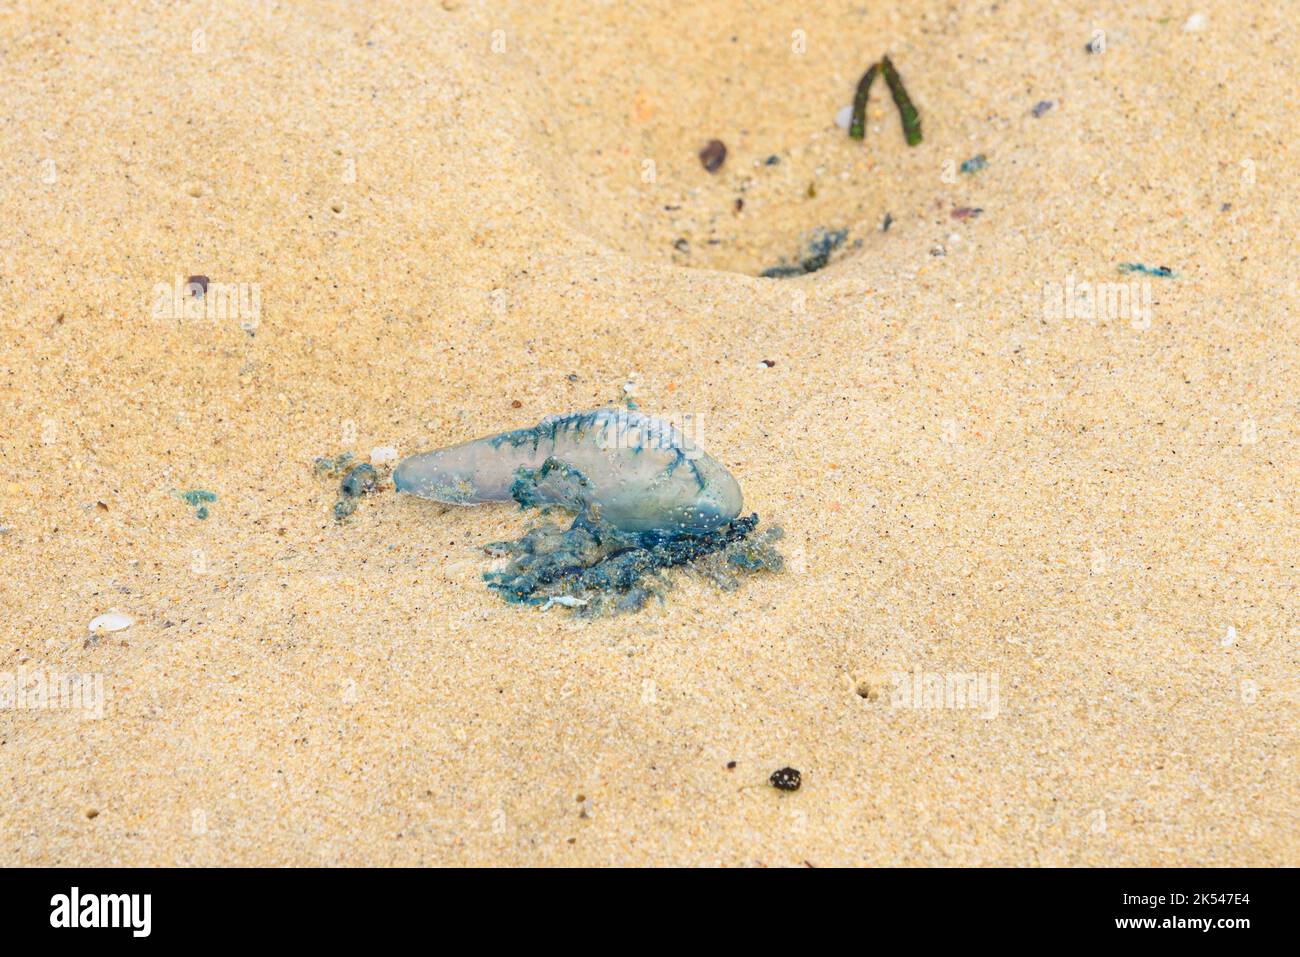 Eine ausgewaschene portugiesische man o' war/blaue Flasche auf dem Sand am Maroubra Beach, Sydney, Australien Stockfoto